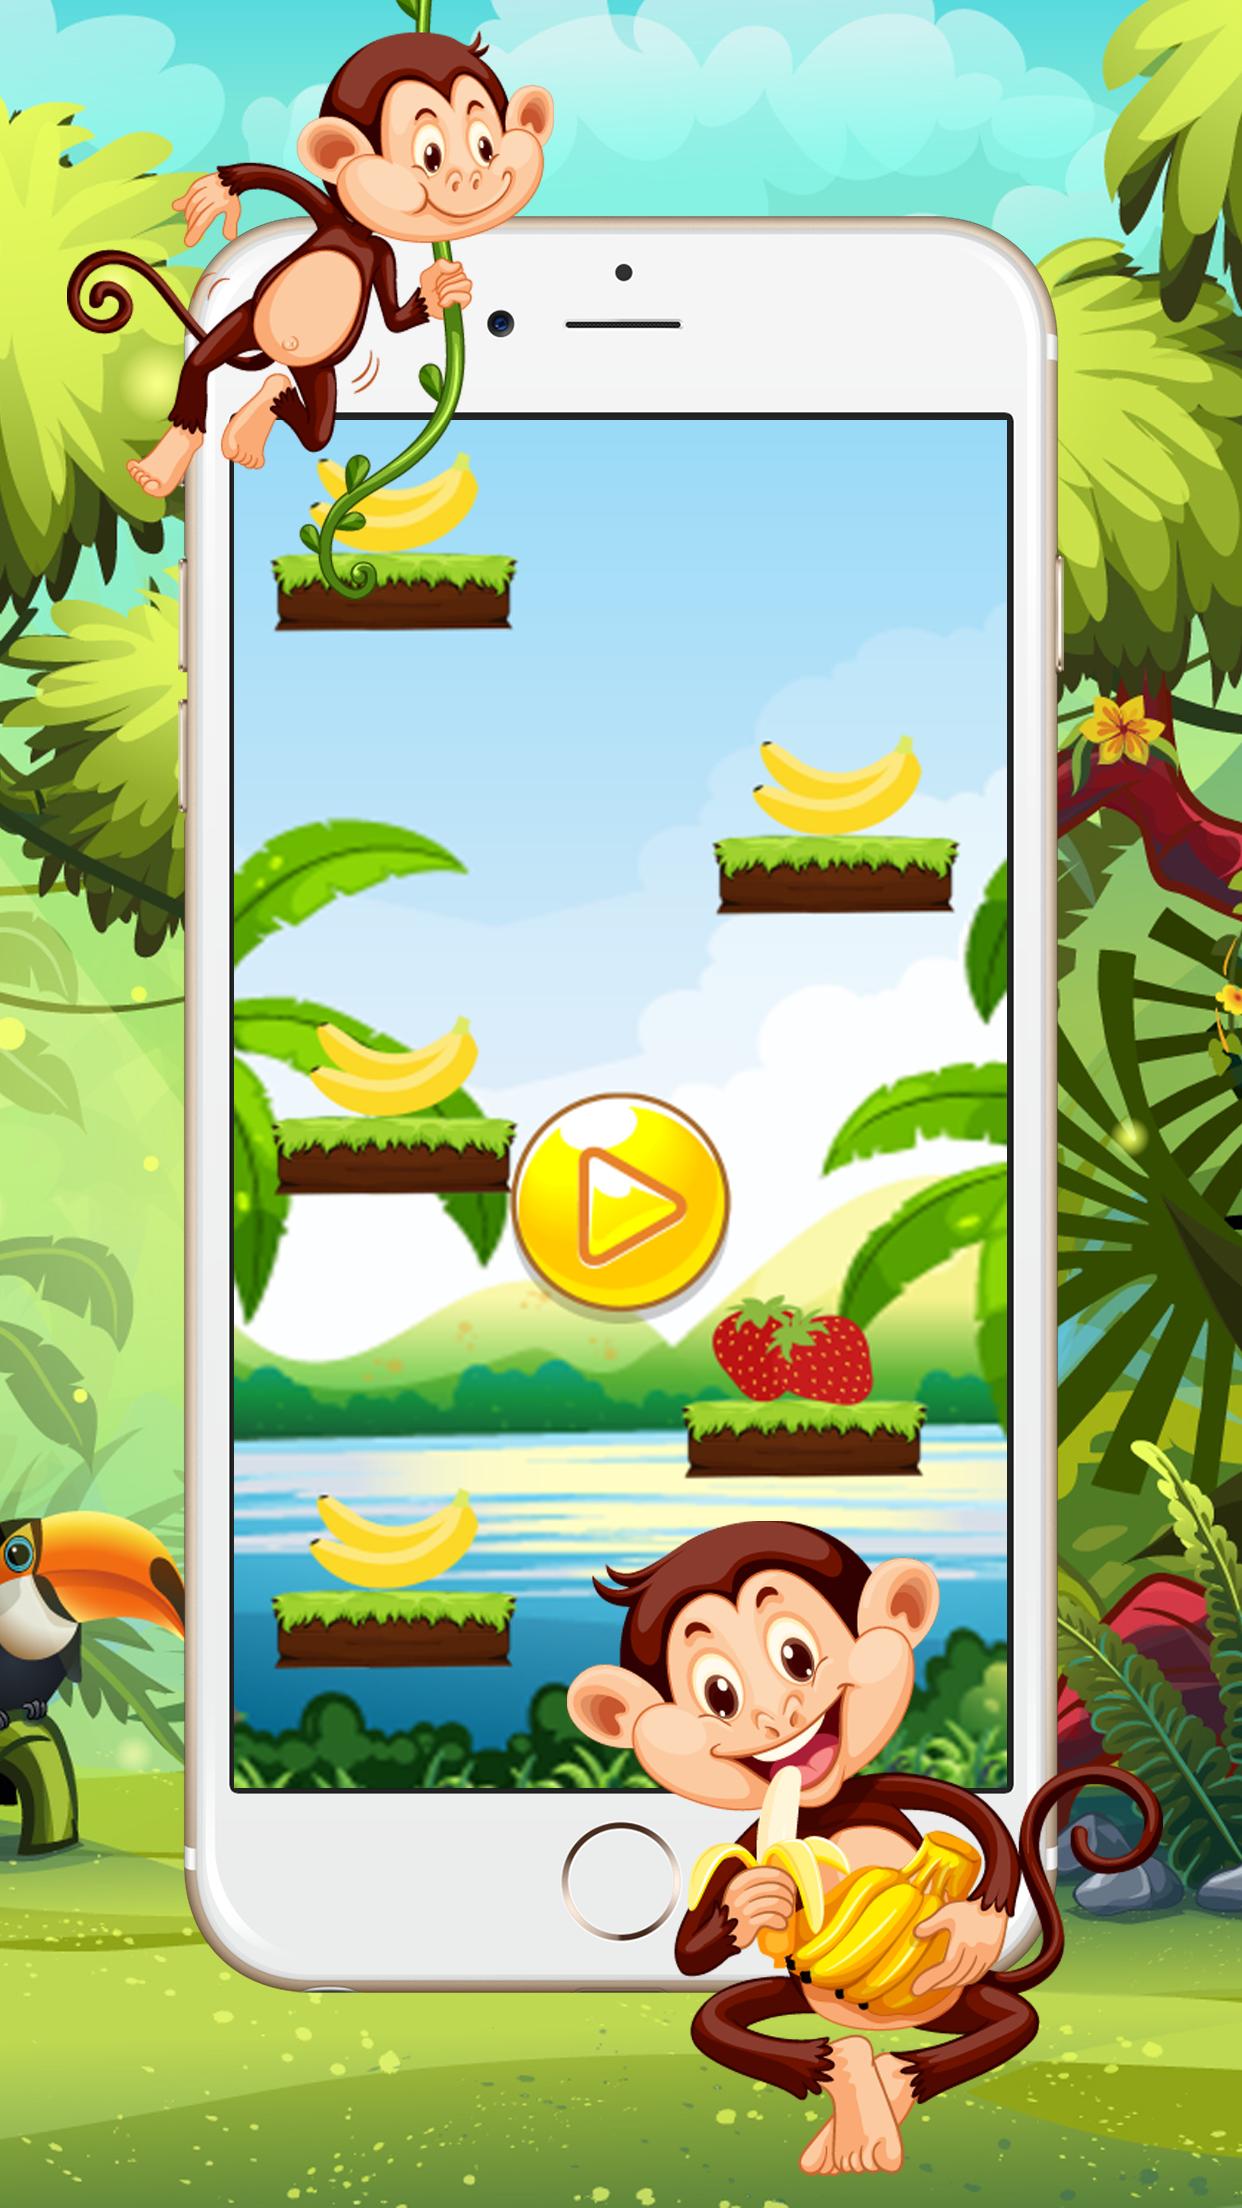 Игра обезьяна прыгает по стенам. Прыгающая обезьяна игра. Игра про обезьян. Игра обезьяна и бананы. Популярная игра с обезьянкой.